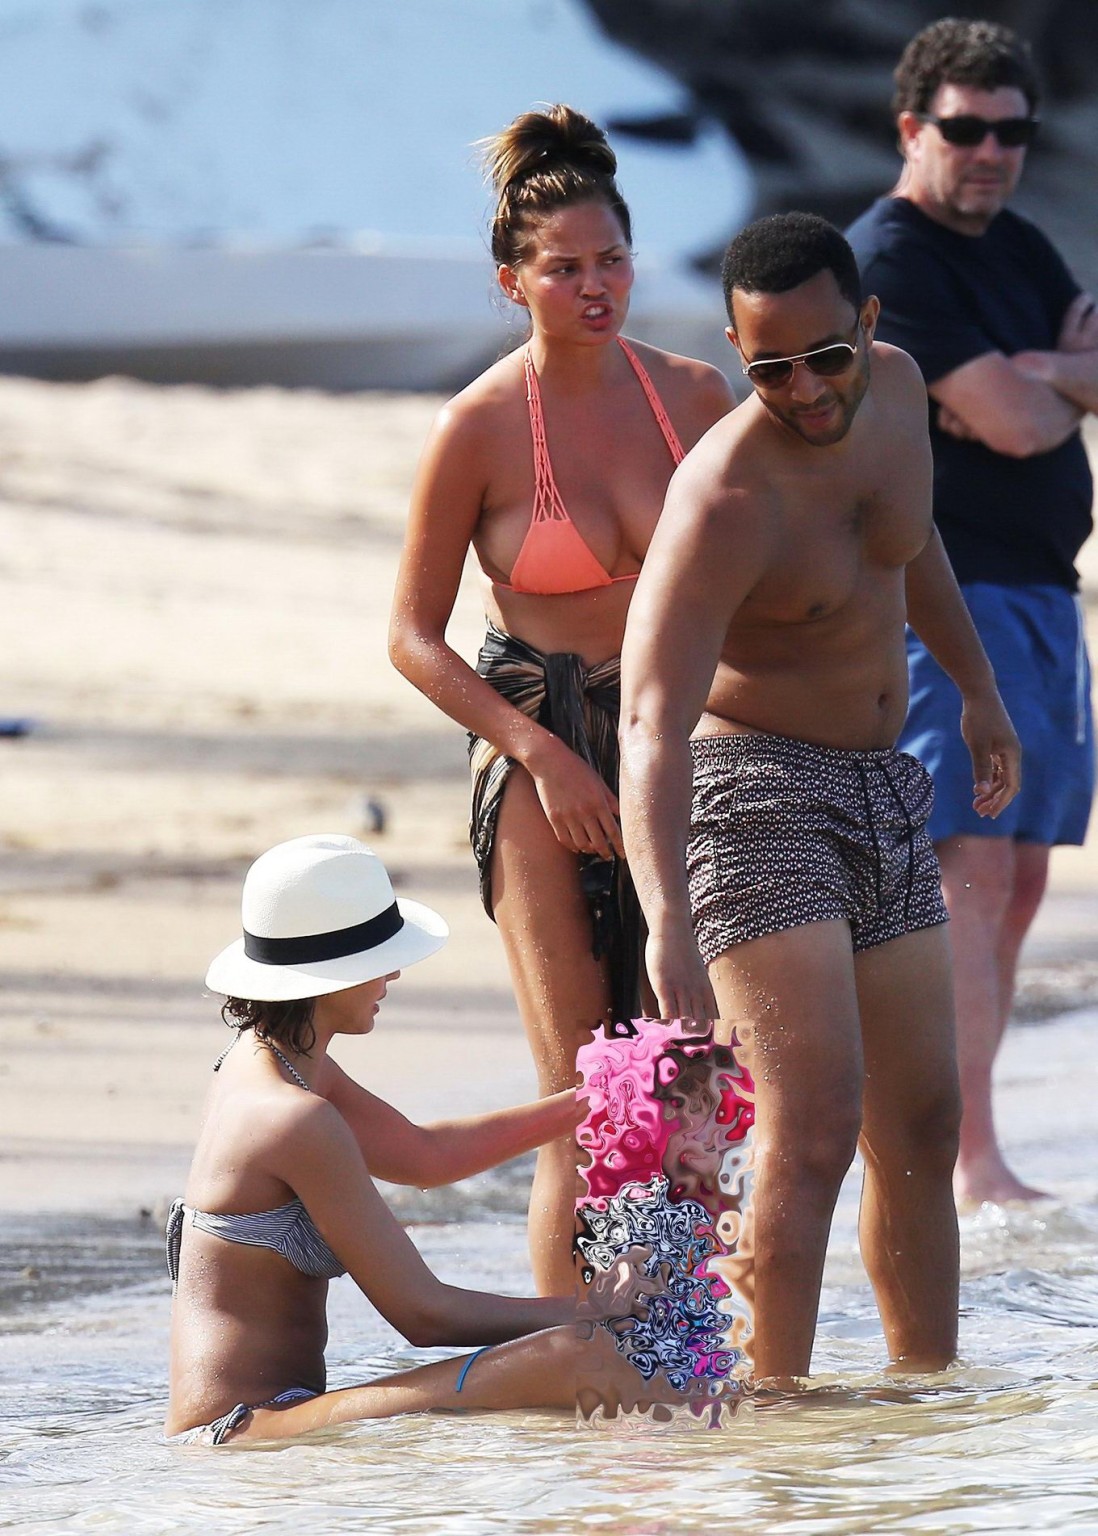 Chrissy Teigen showing off her bikini body in the Caribbean #75169297